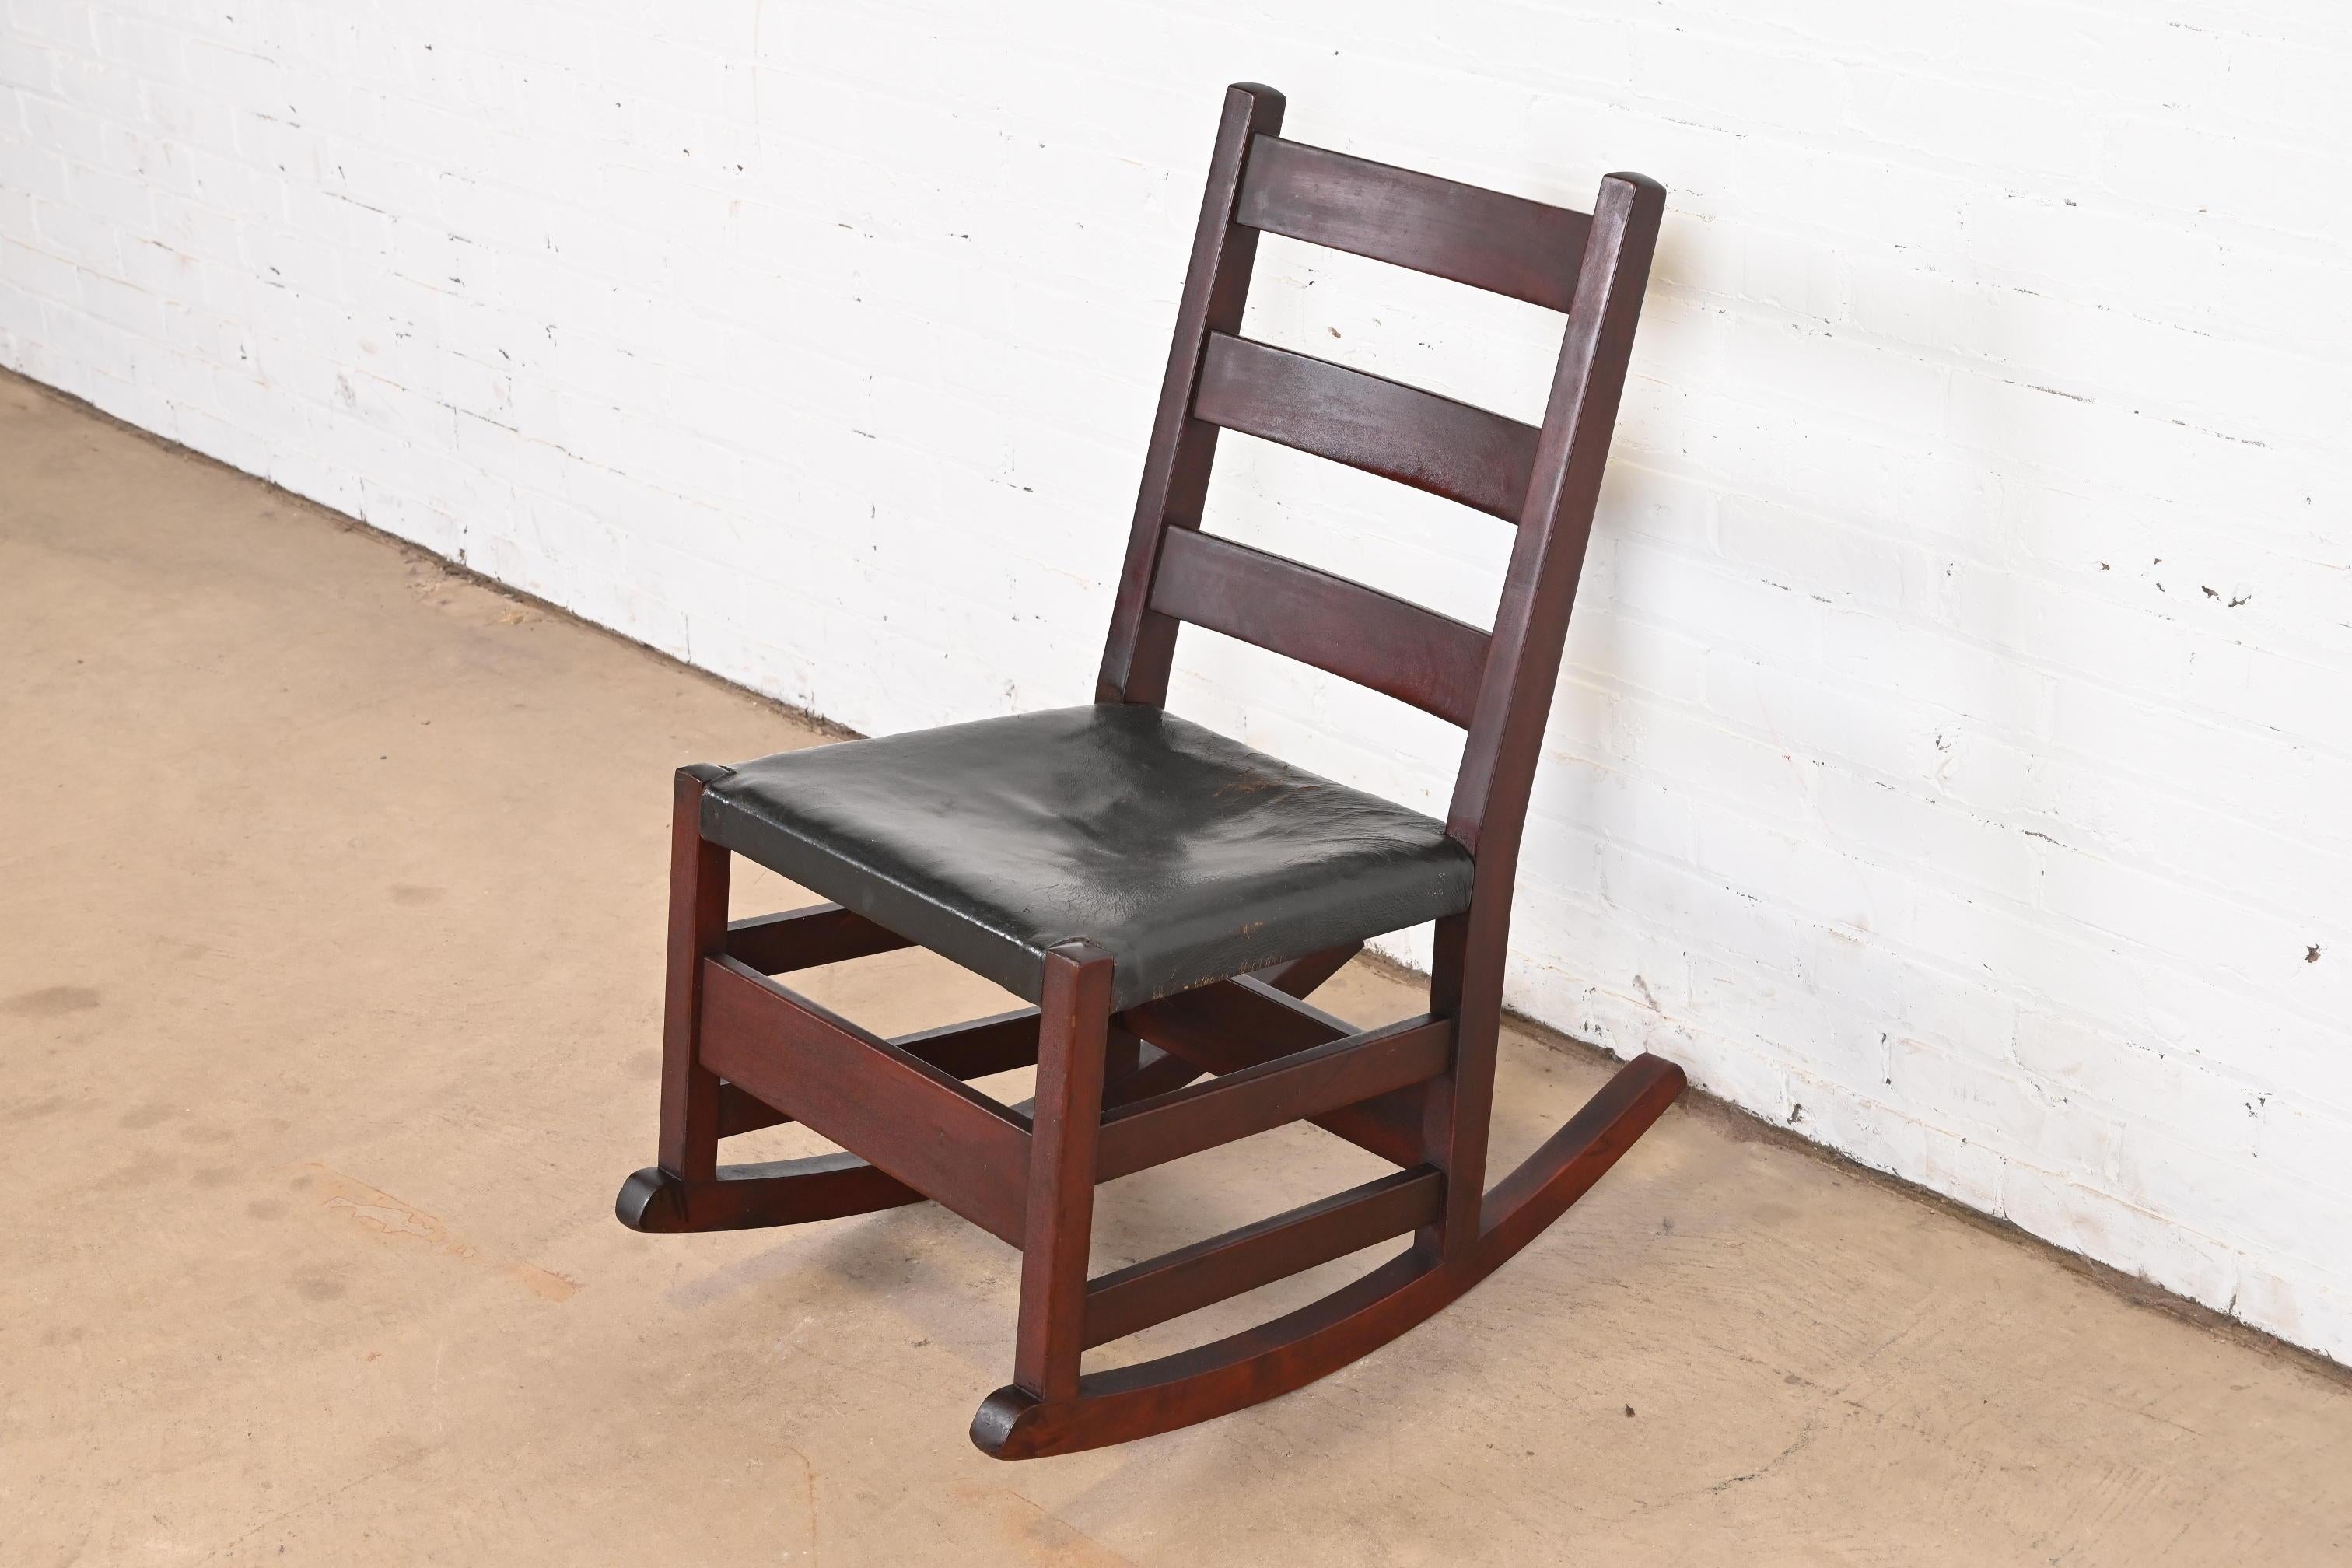 Un magnifique fauteuil de couture Arts & Crafts en chêne Mission

Par Gustav Stickley

USA, Circa 1900

Chêne massif scié en quartier, avec siège en cuir noir.

Dimensions : 18 